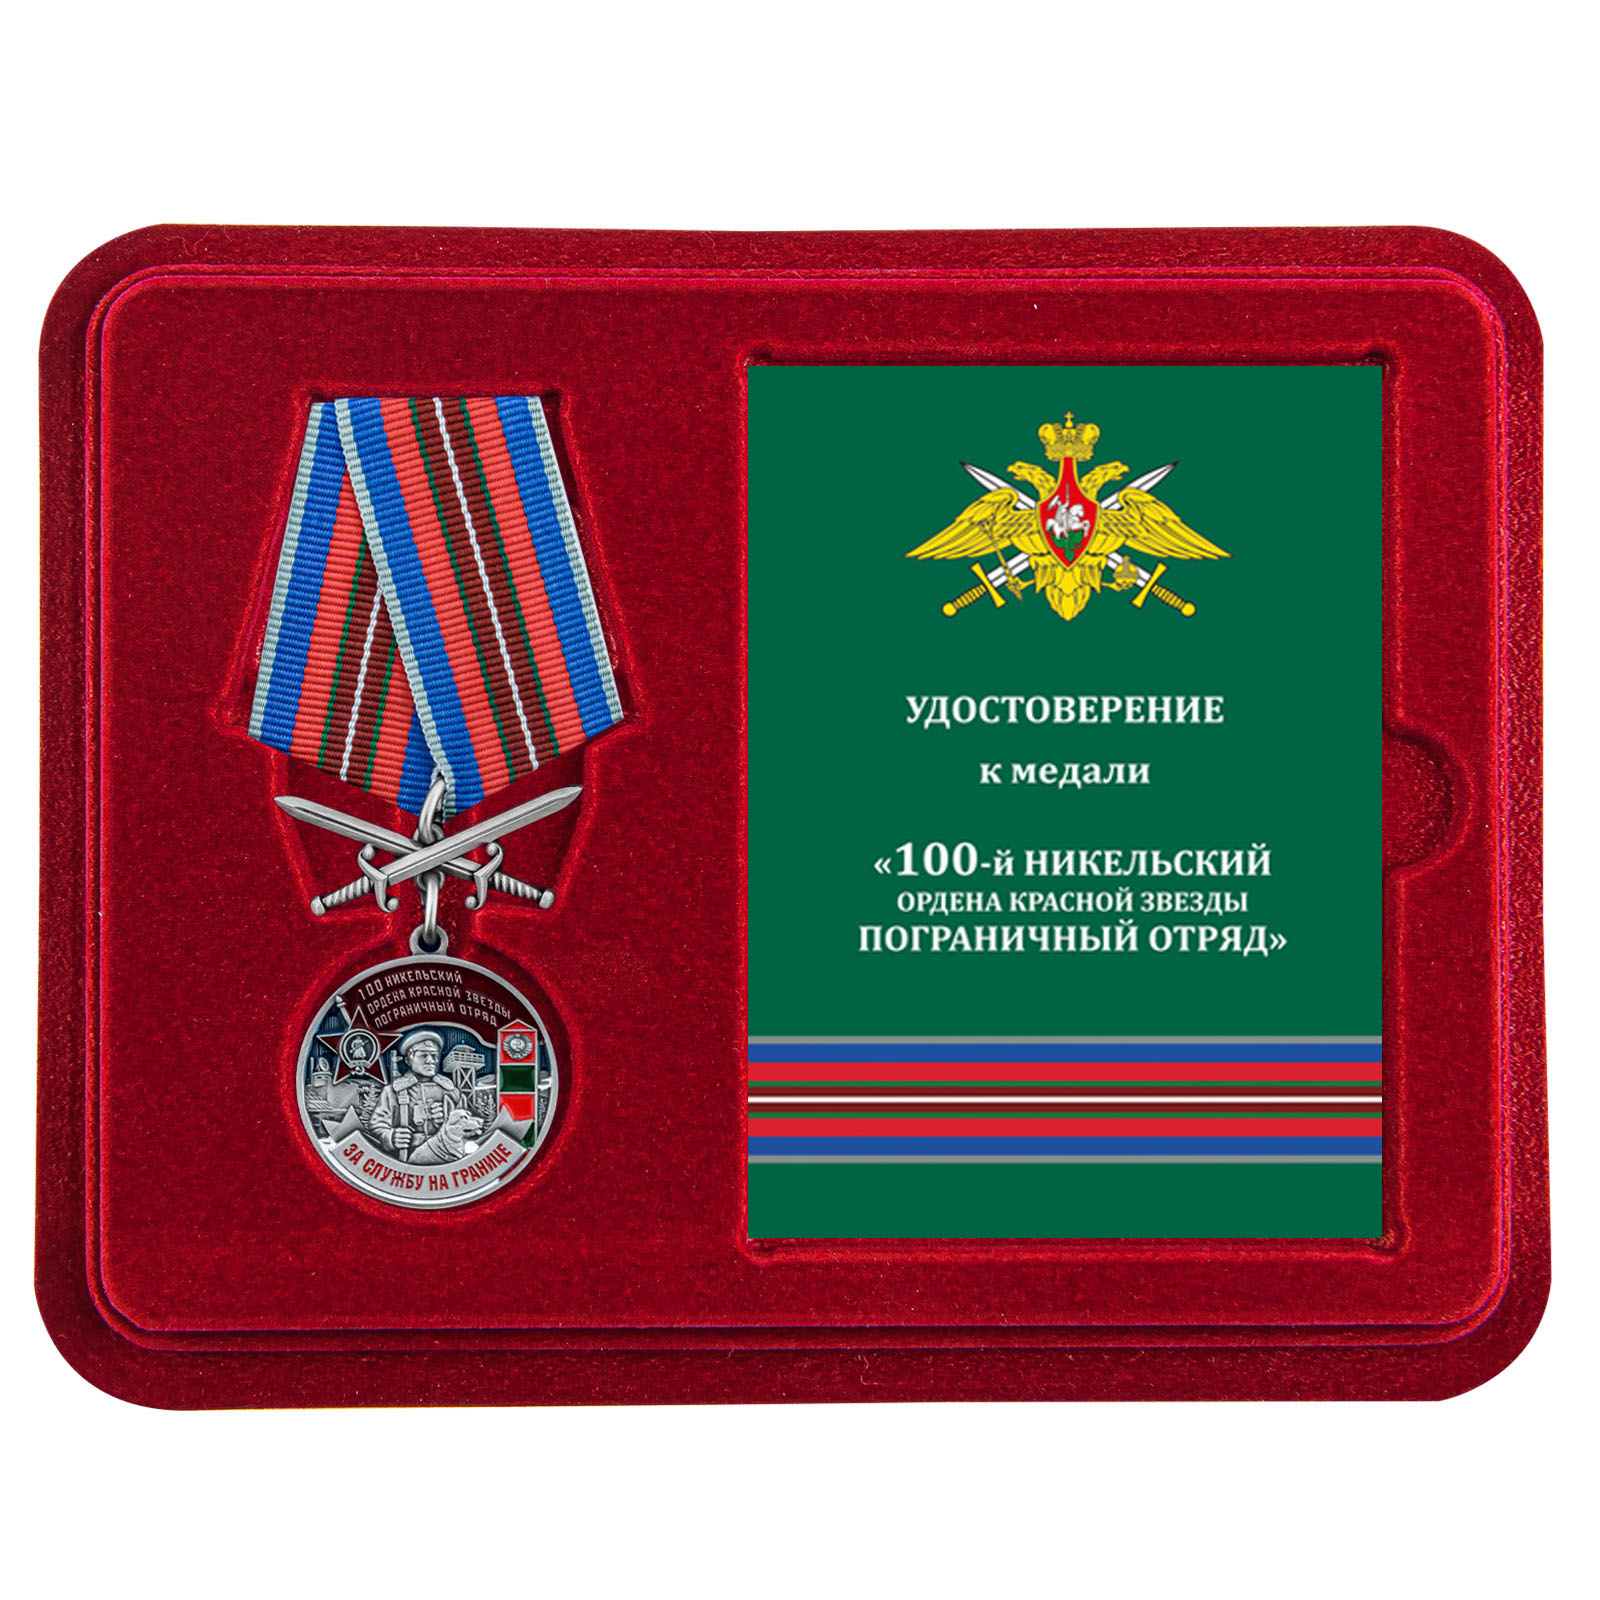 Купить медаль За службу в Никельском пограничном отряде онлайн